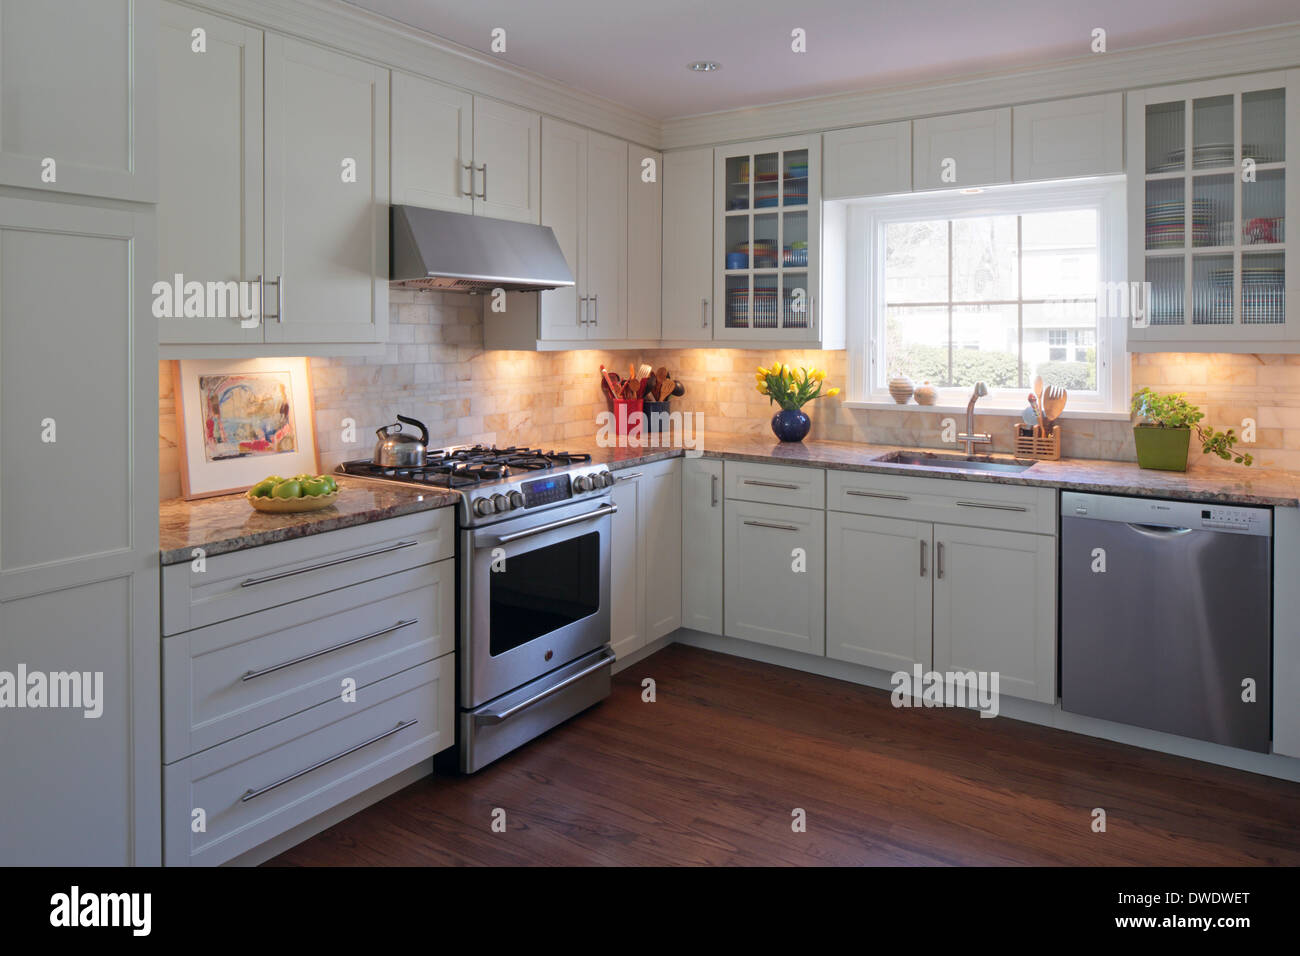 Englisch American Country Home Interiors, Larchmont, Vereinigte Staaten von Amerika. Architekt: Alexander Architektur PLLC, 2013. Küche-interio Stockfoto